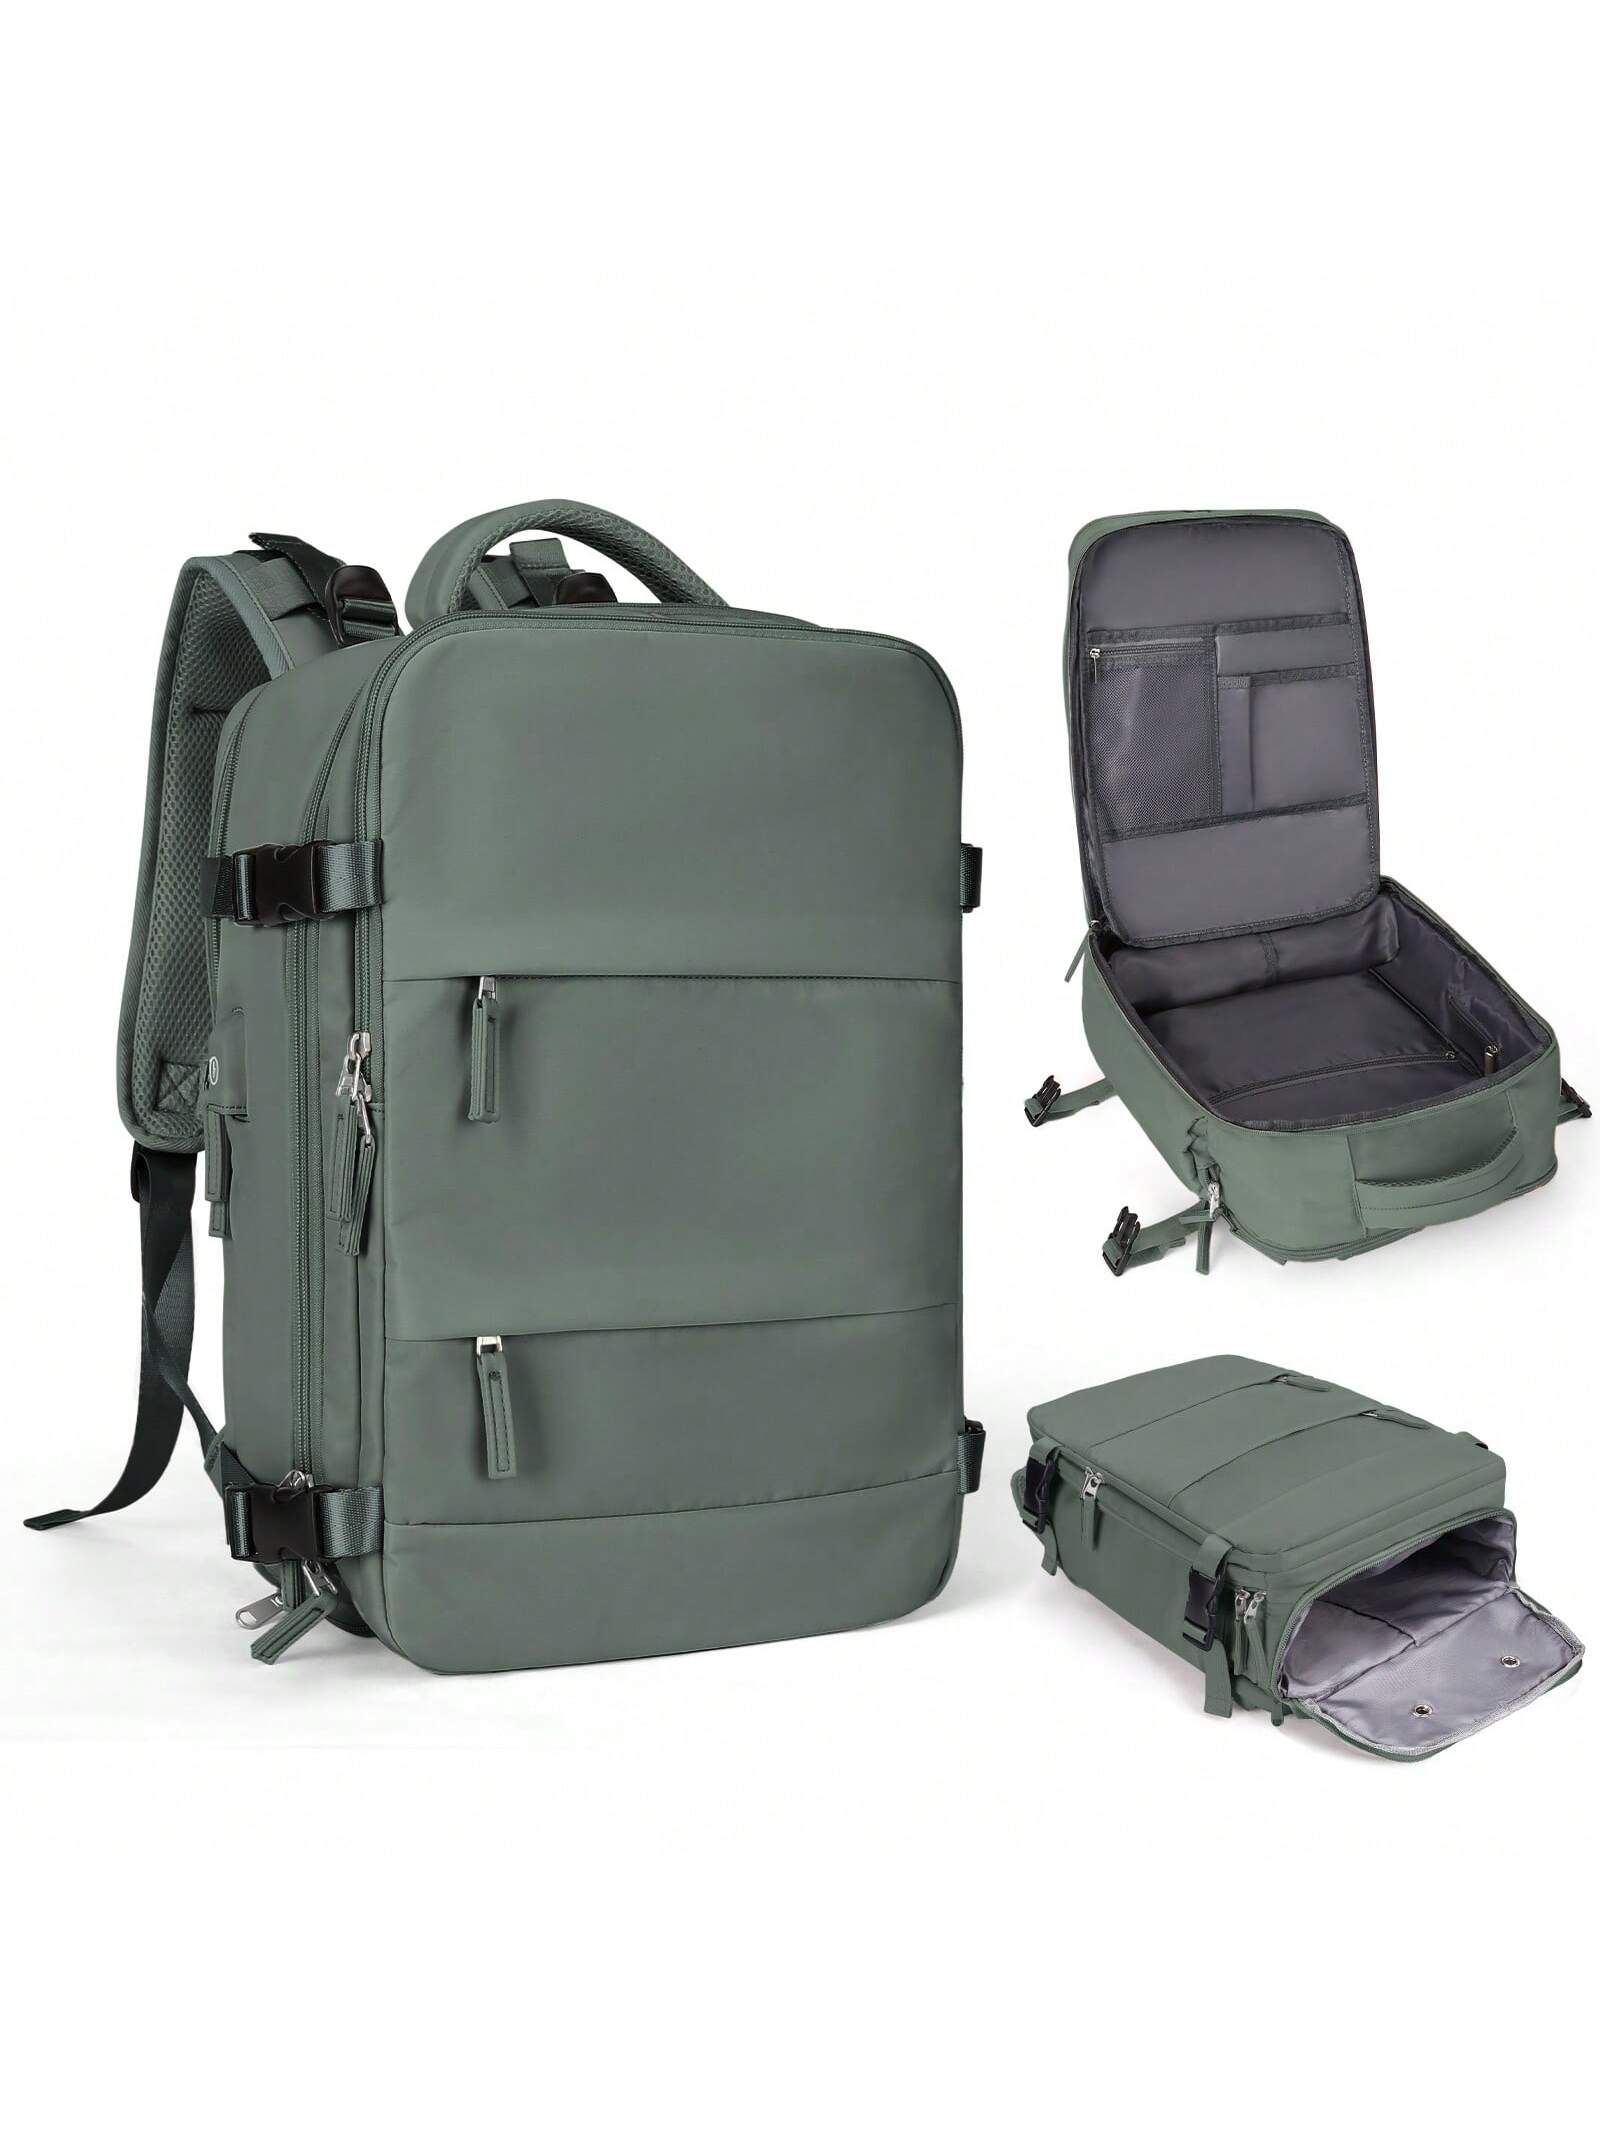 Женский дорожный рюкзак с USB-портом для зарядки, армейский зеленый